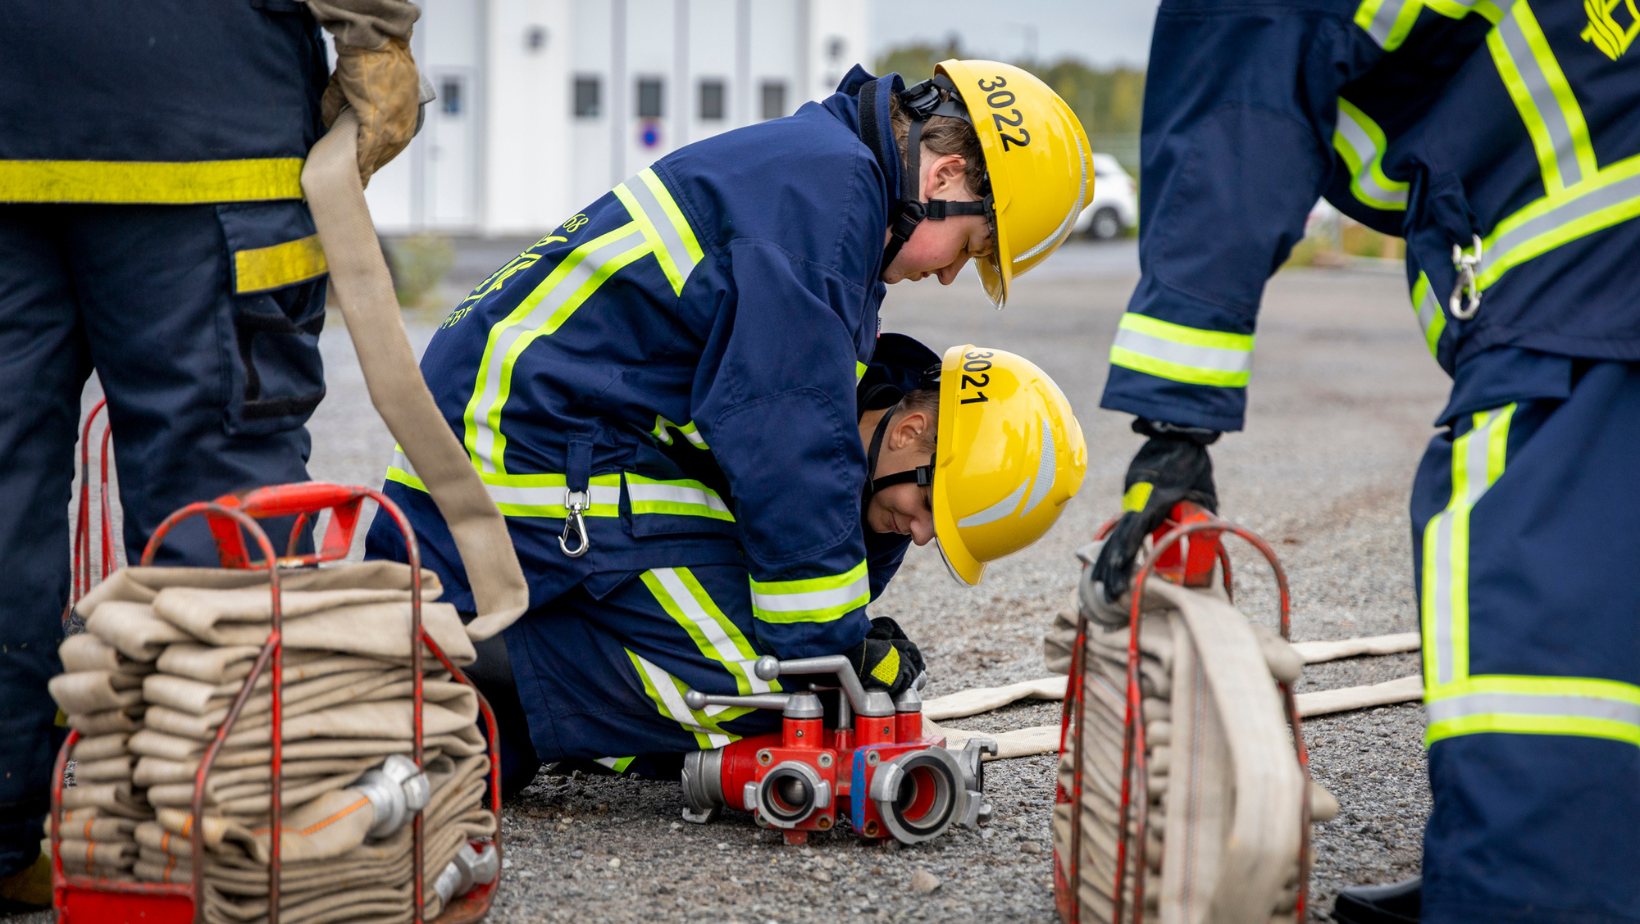 Palokuntanuorisotoimintaa uudistetaan palokuntanuoria ja heidän ohjaajiaan kuunnellen.